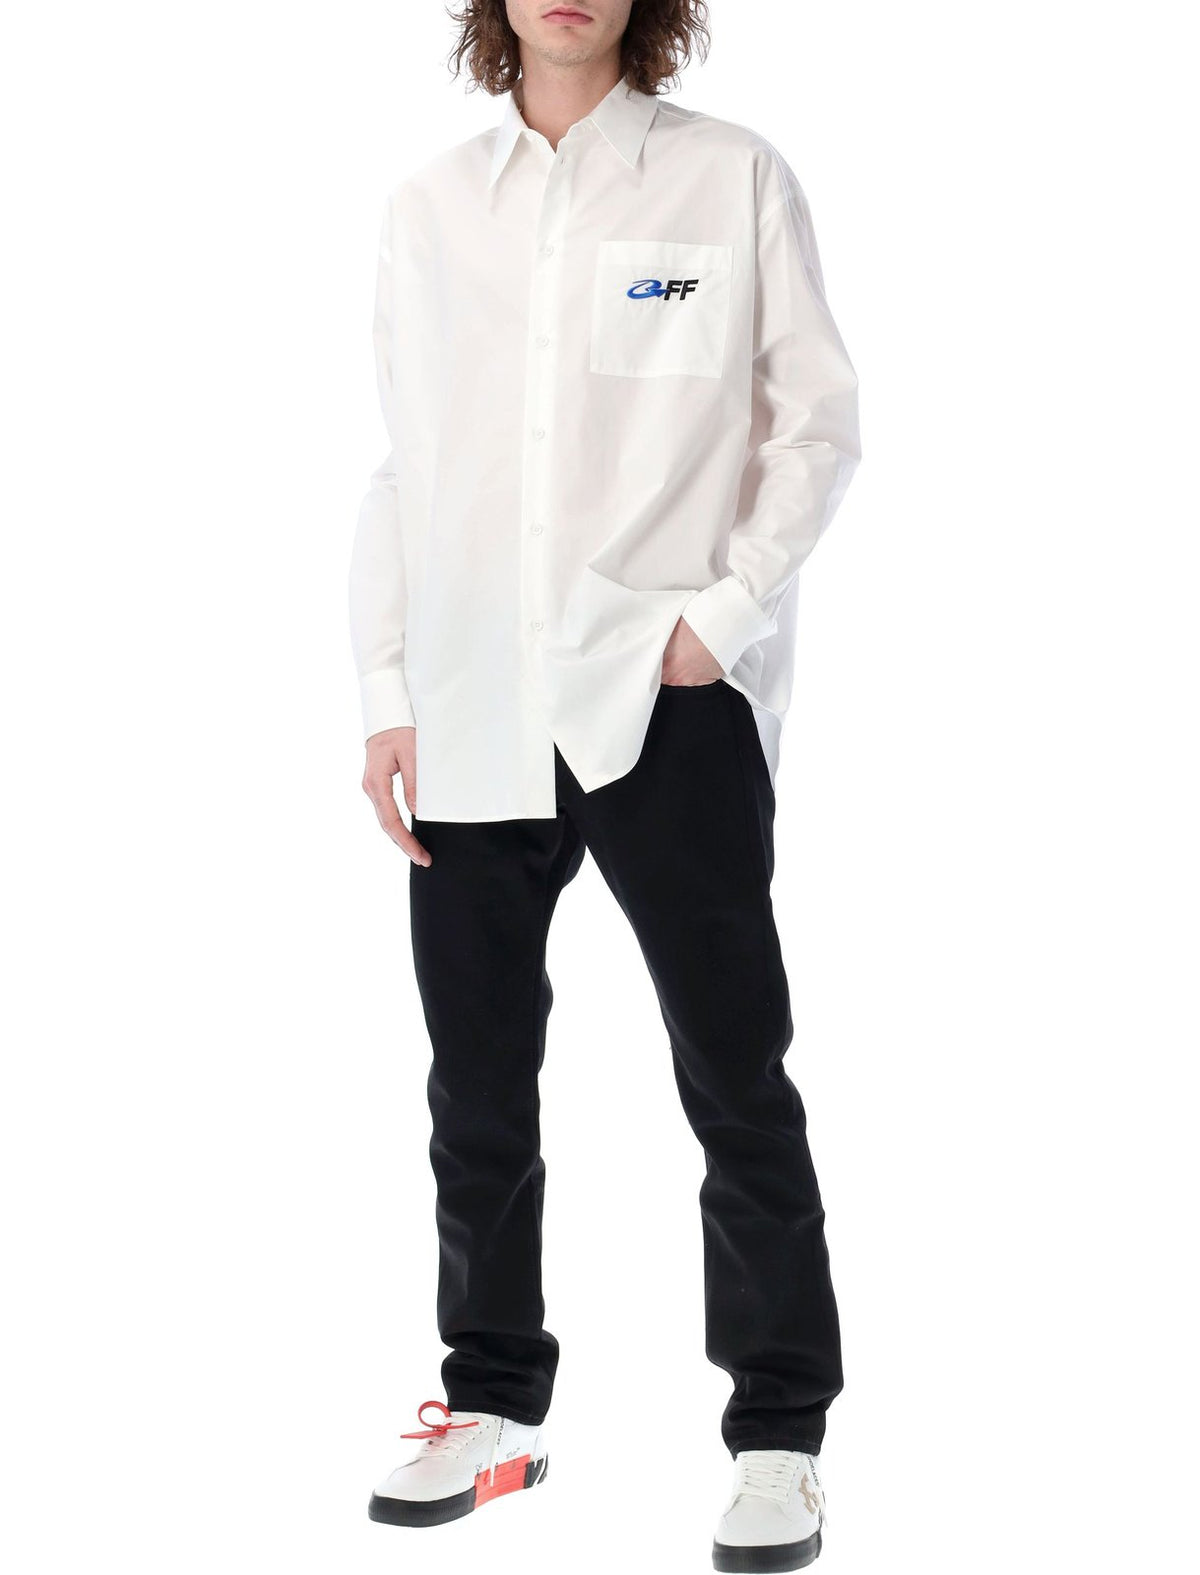 Off-White Exact Opp Logo Detailed Long-Sleeved Shirt